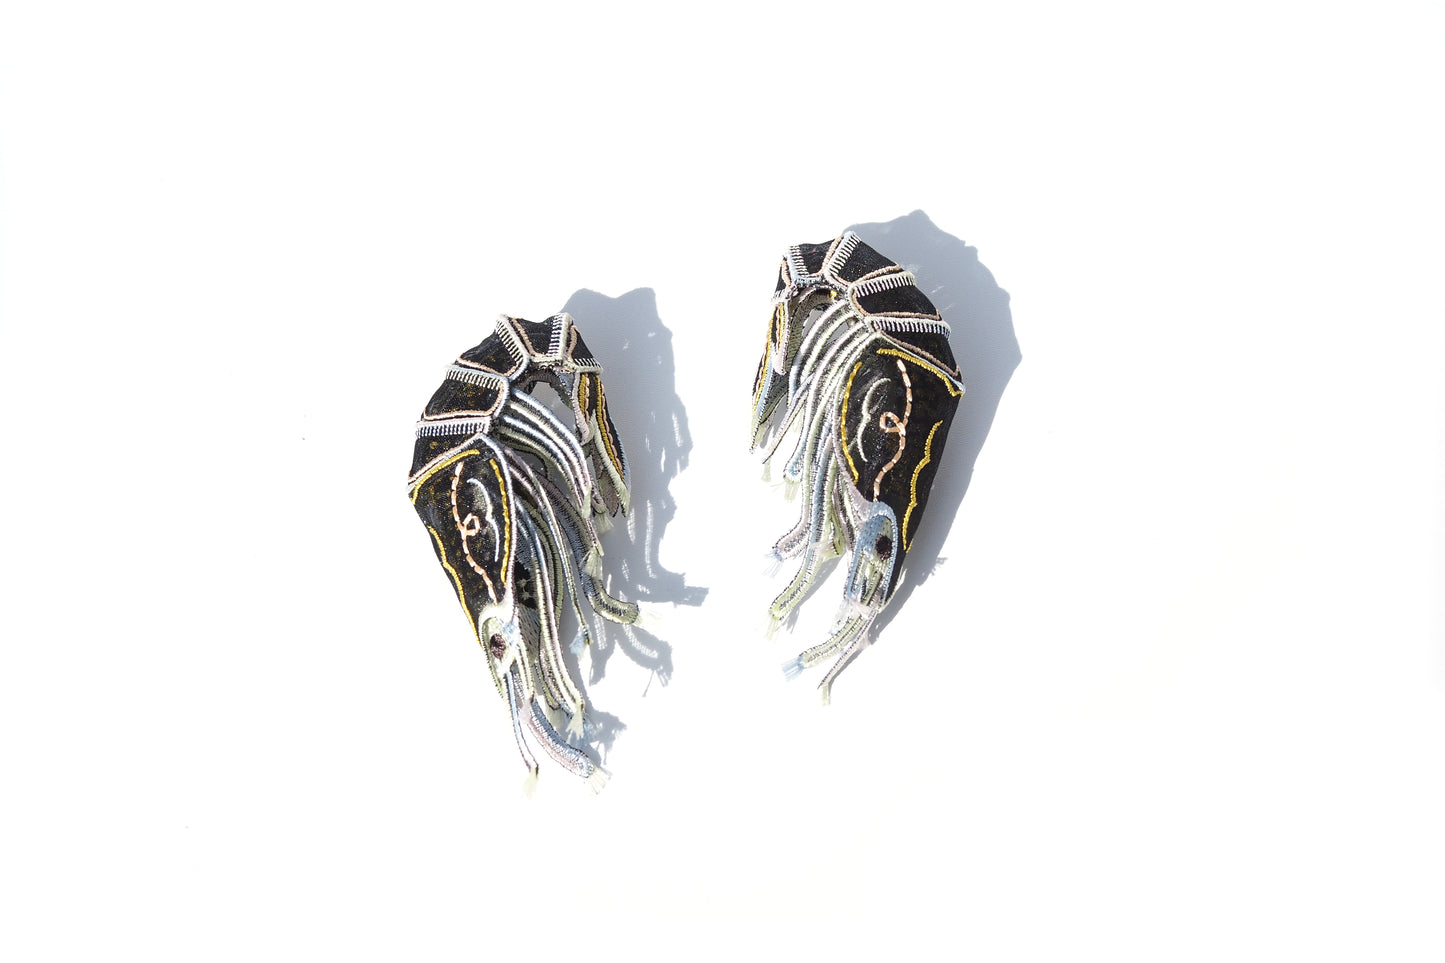 Shrimp earrings